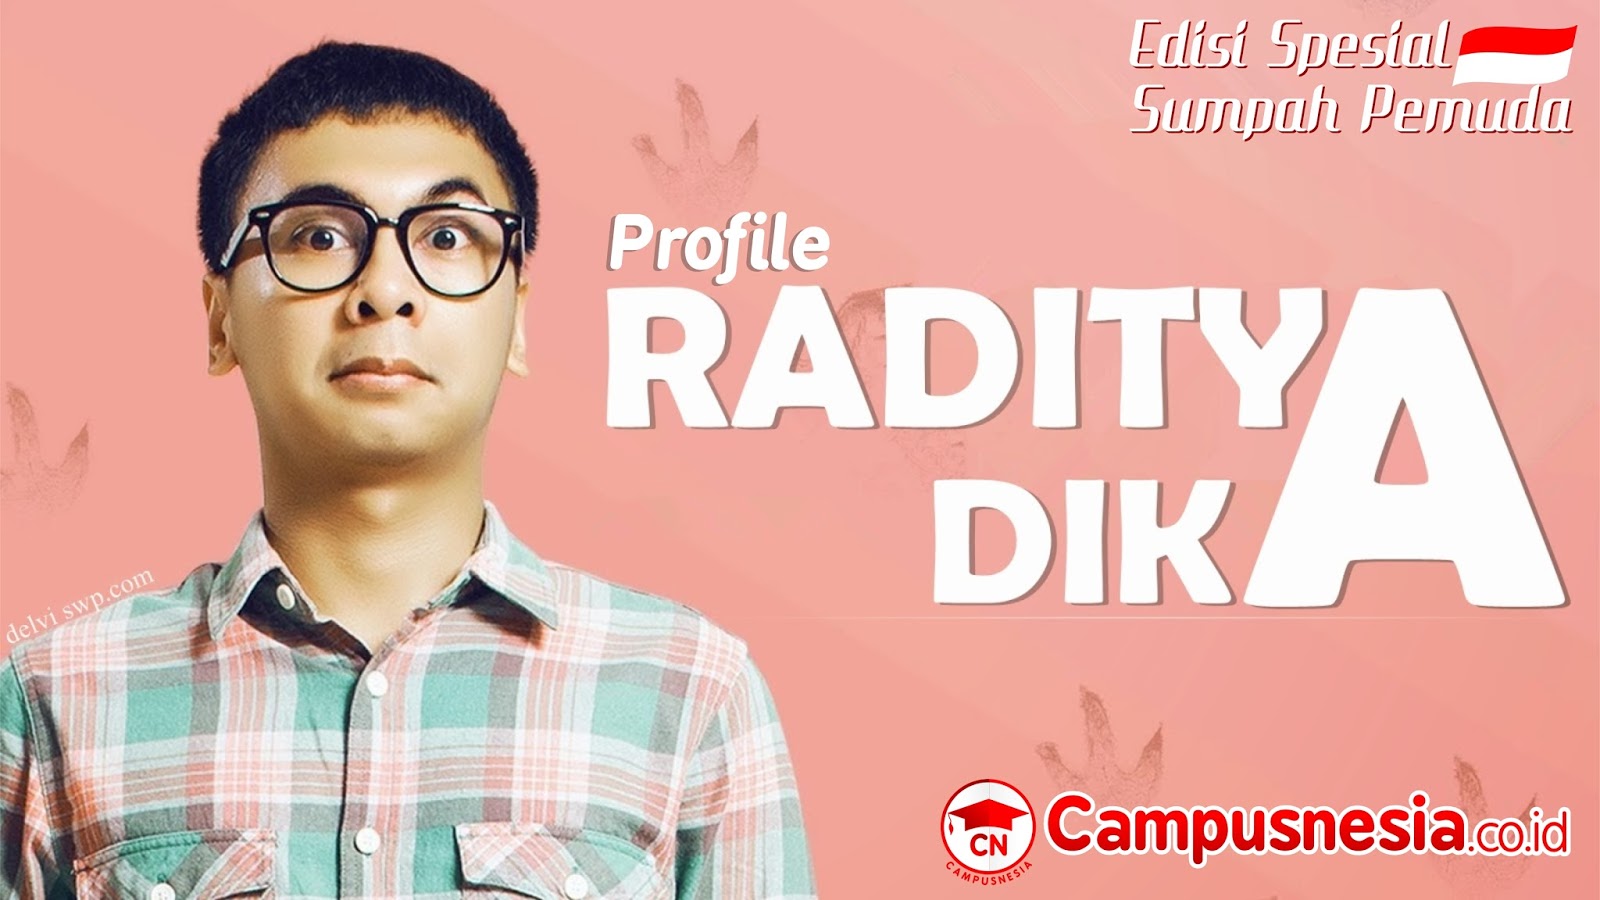 Berkenalan Dengan Raditya Dika Stand Up Comedian Novelis Dan Sutradara Muda Campusnesia Co Id